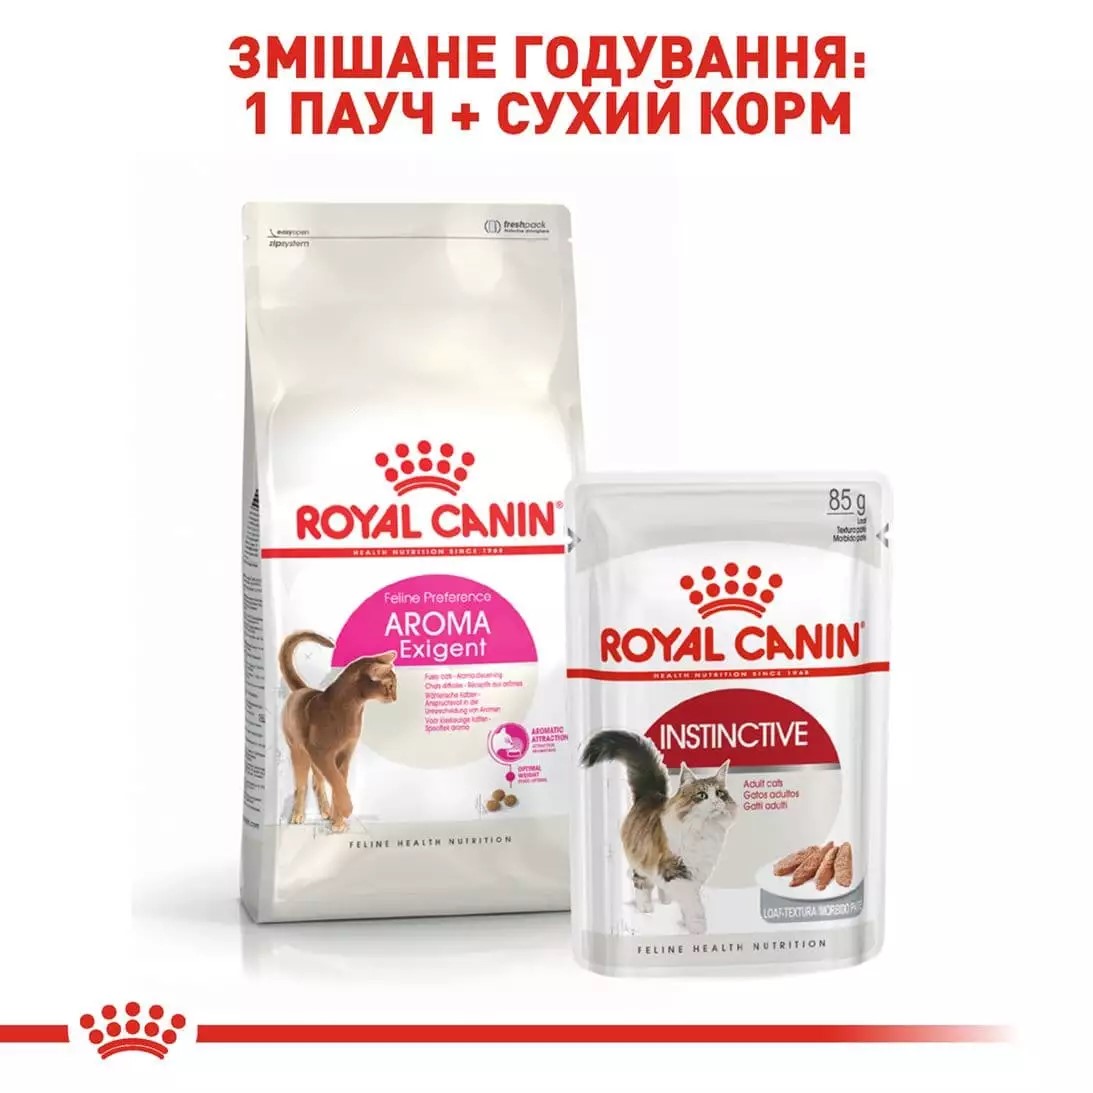 Сухий корм для котів Royal Canin Exigent Aromatic - 2